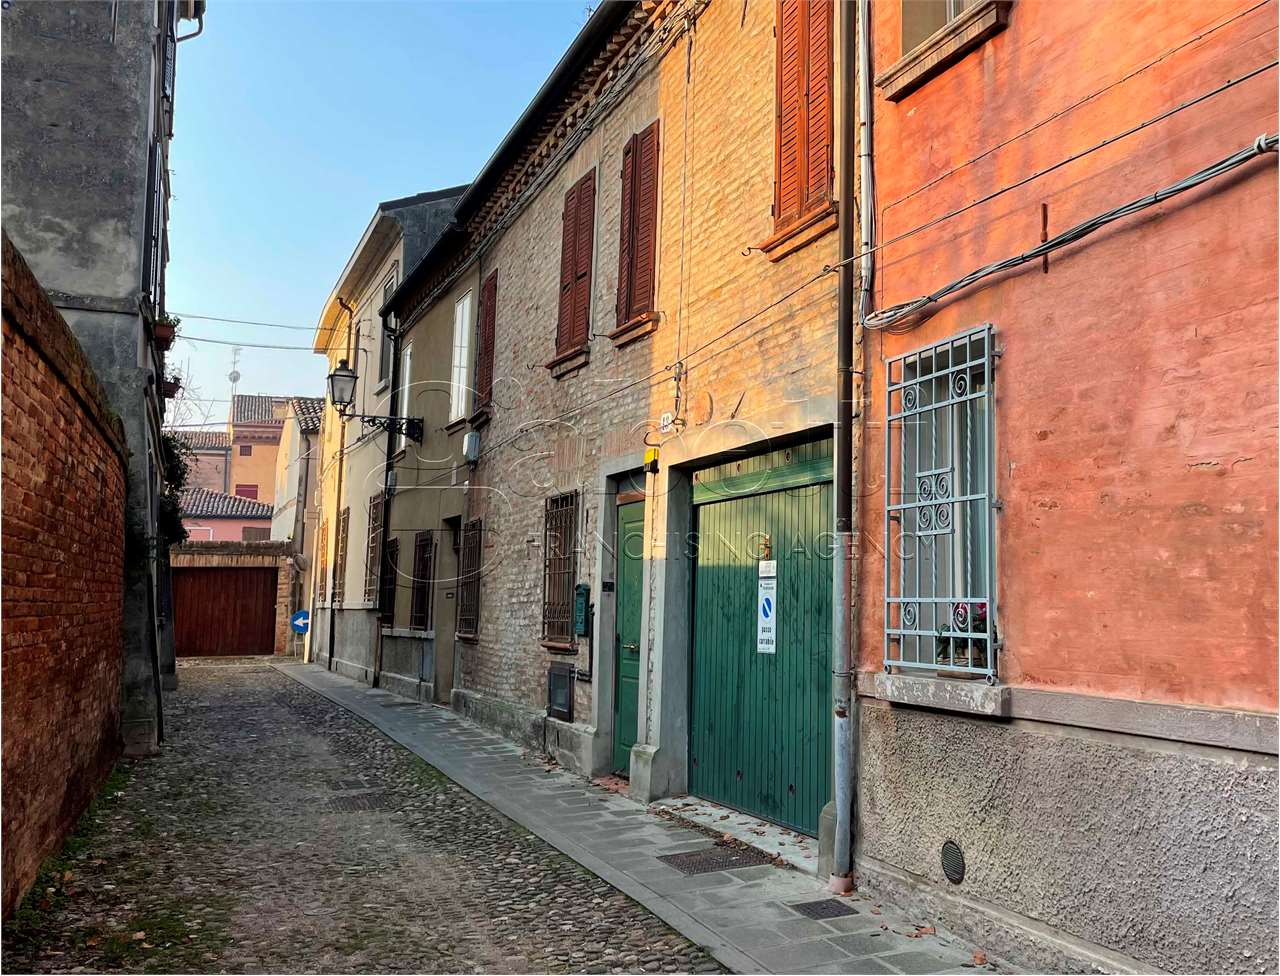 Porzione di casa in vendita a Ferrara (FE)